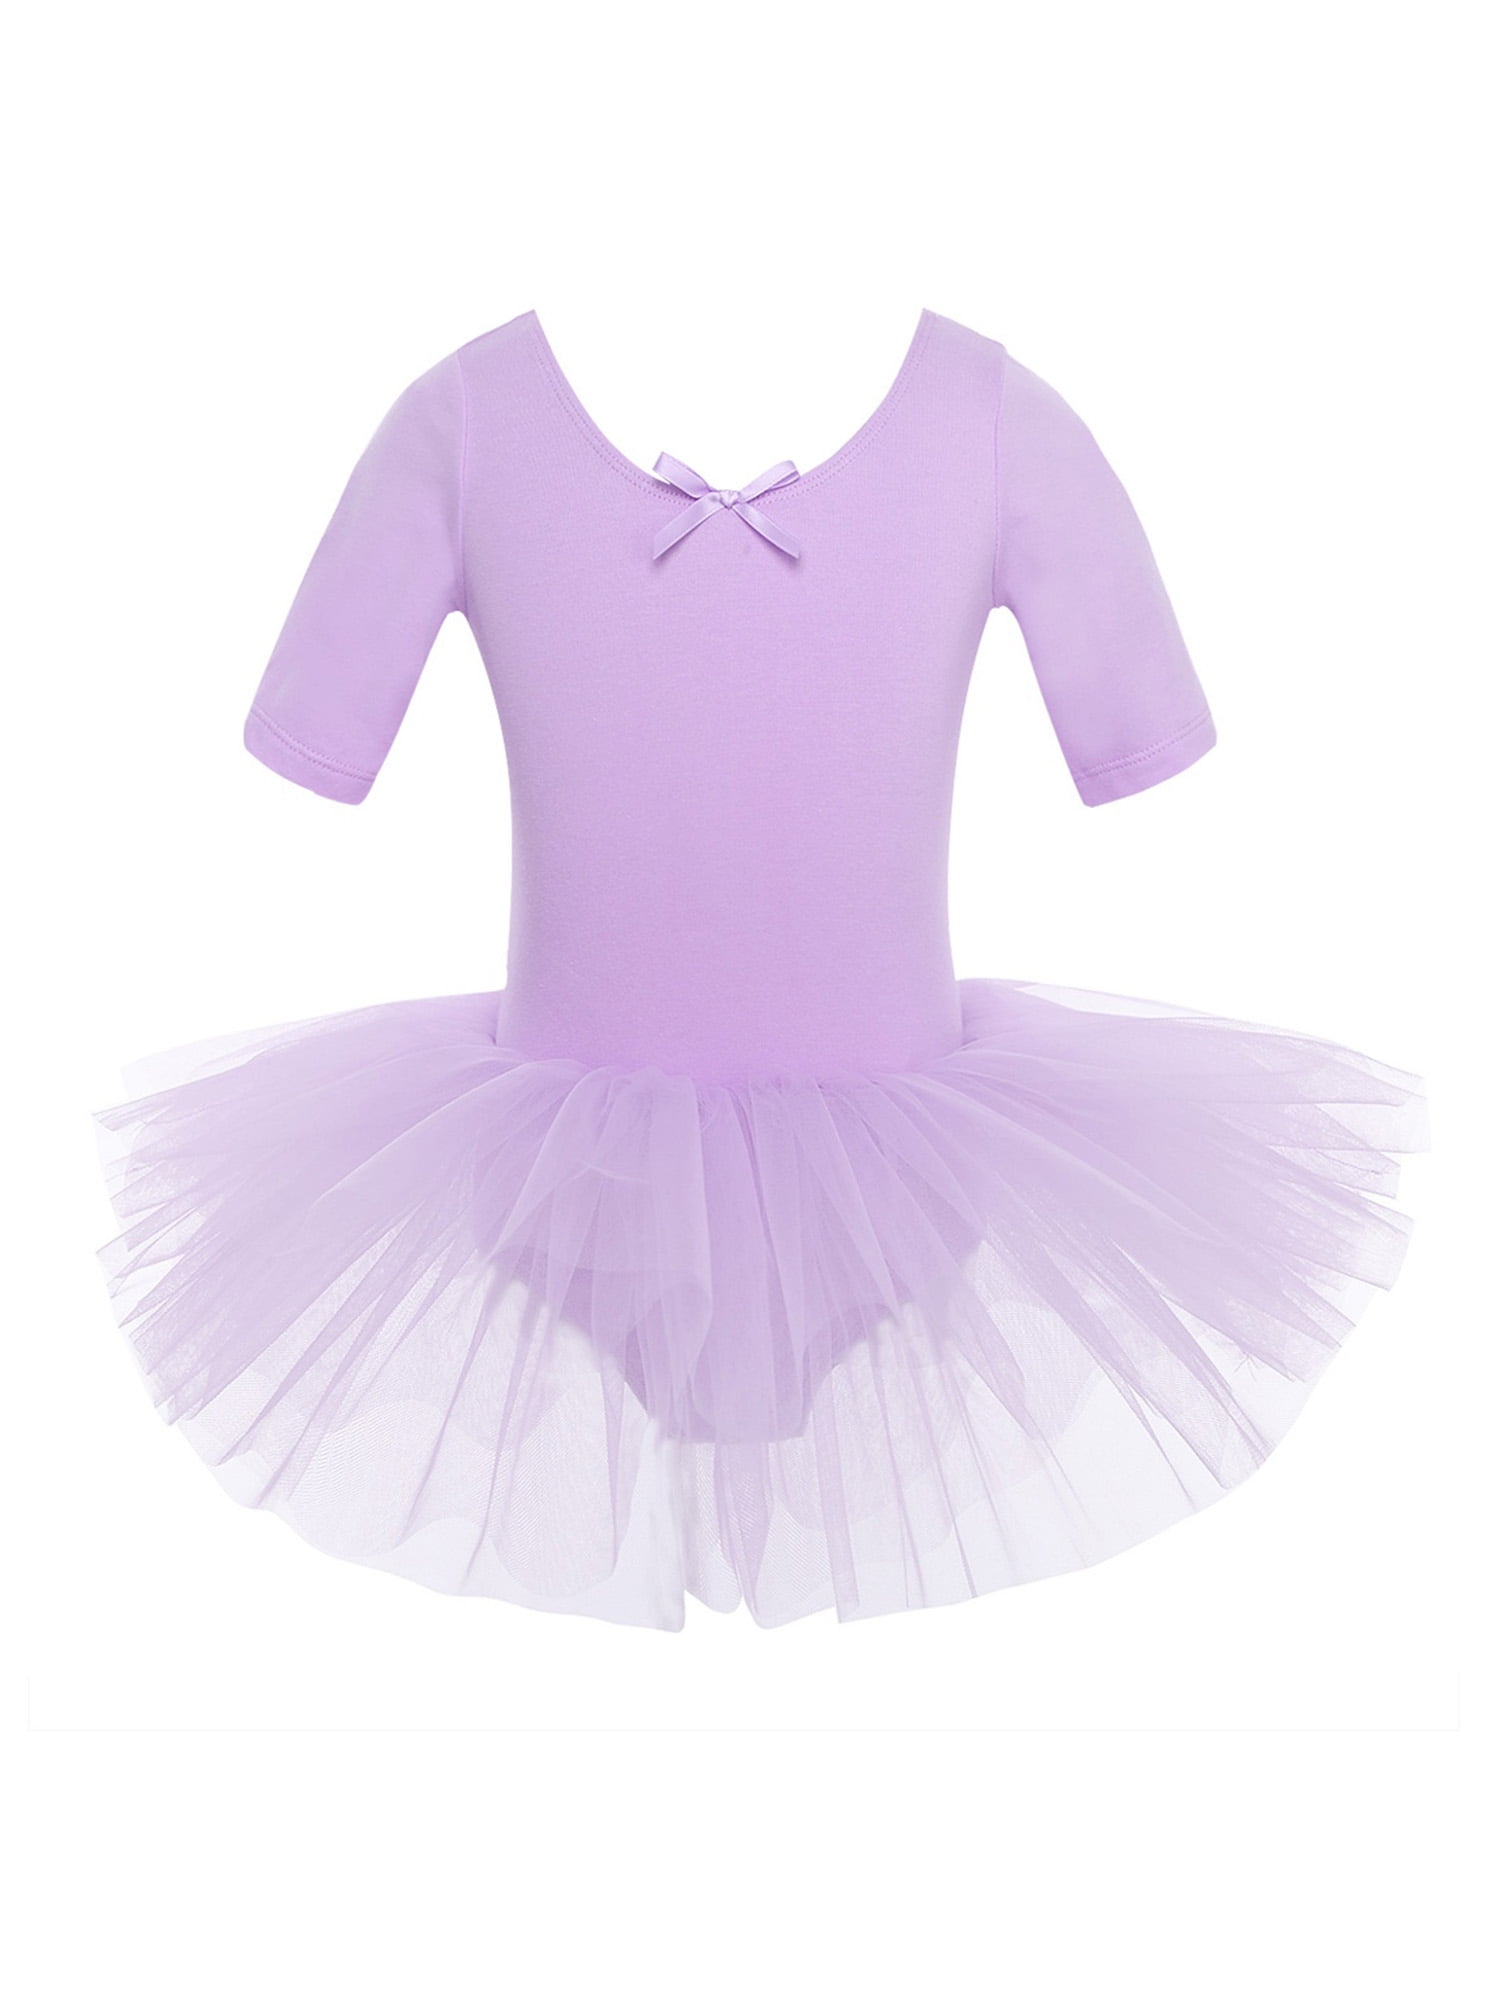 mister temperamentet antik instruktør iEFiEL Girls Cross Back Tulle Ballet Dance Tutu Dress with Built-in  Knickers Dance Outfit - Walmart.com